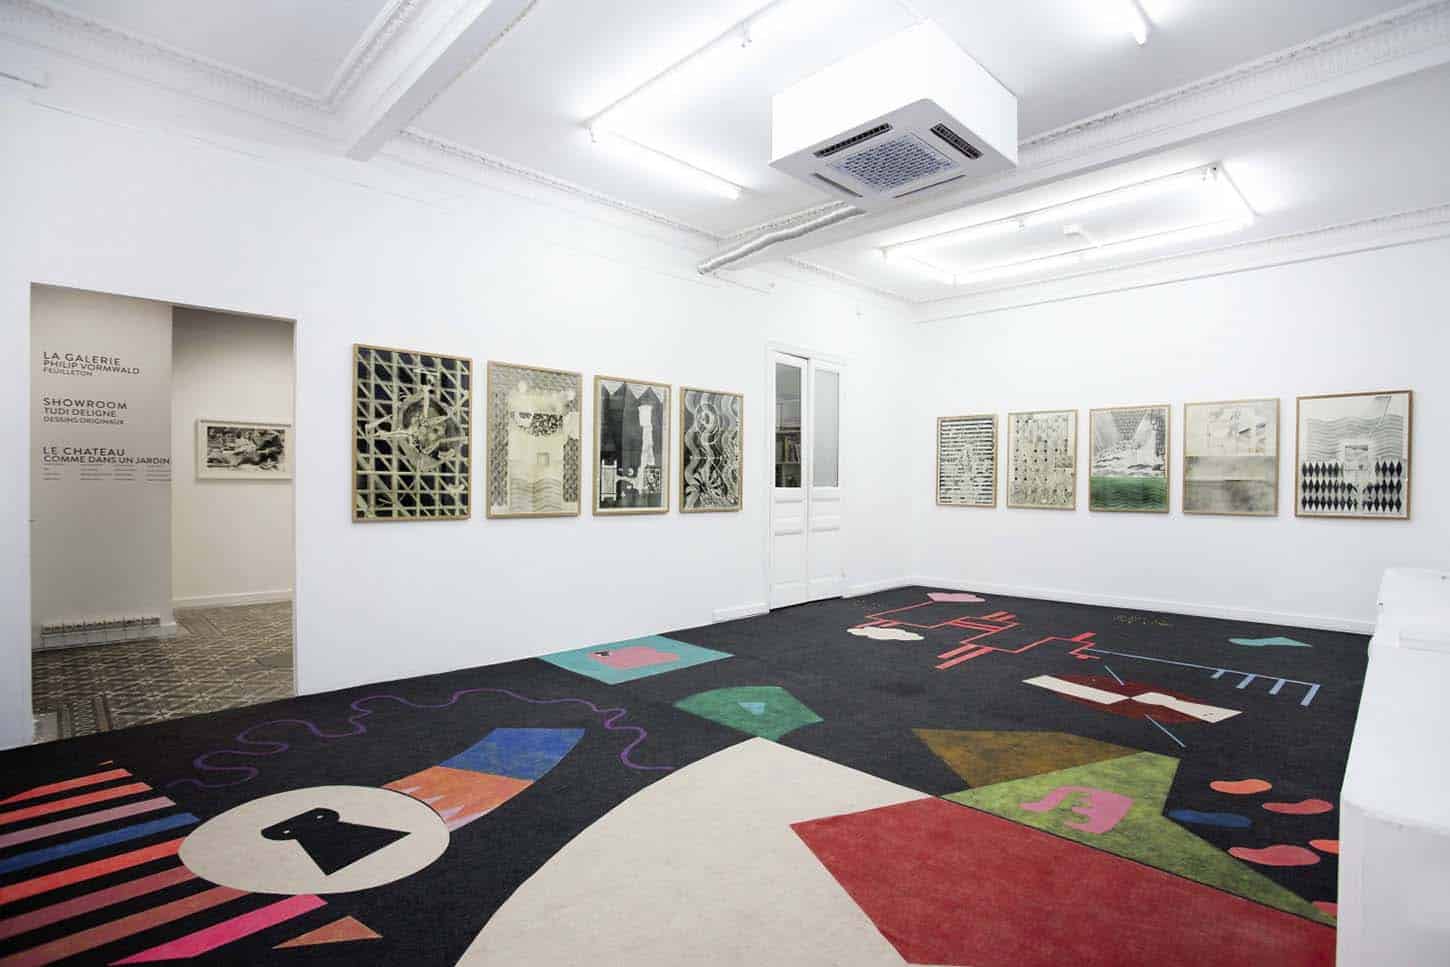 • La galerie :
Philip Vormwald,
Feuilleton
tapis de sol en collaboration avec
Baptiste César
26 février - 5 mai 2016